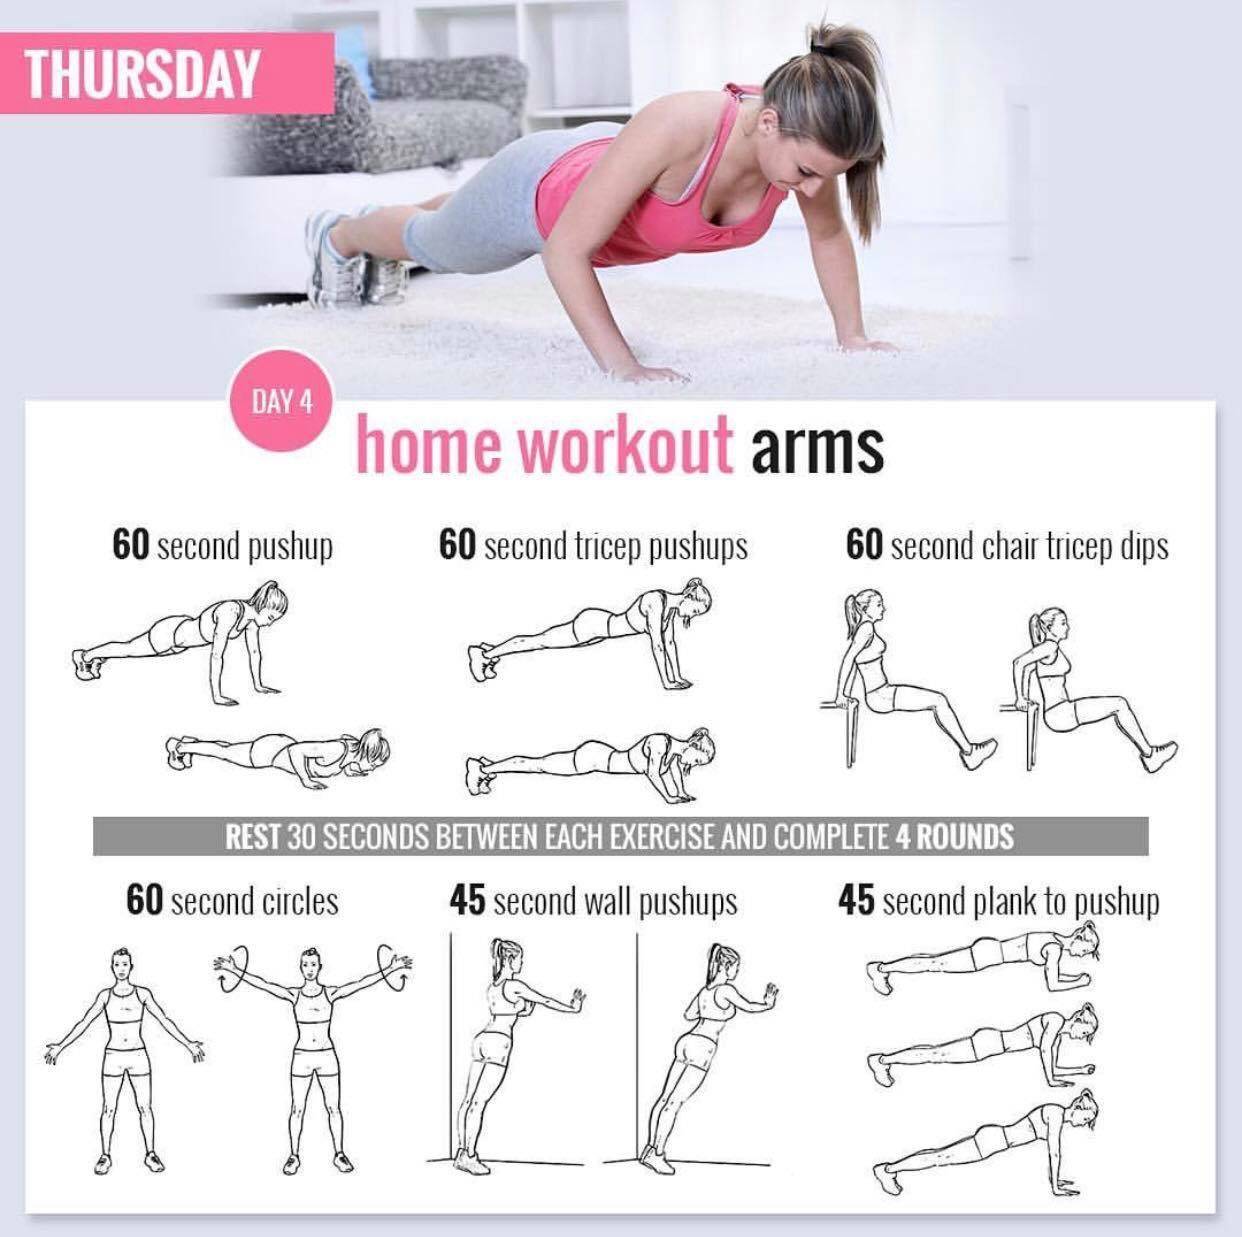 Как сделать руки сильными у девушки — 7 упражнений, чтобы укрепить мышцы женских рук и плеч